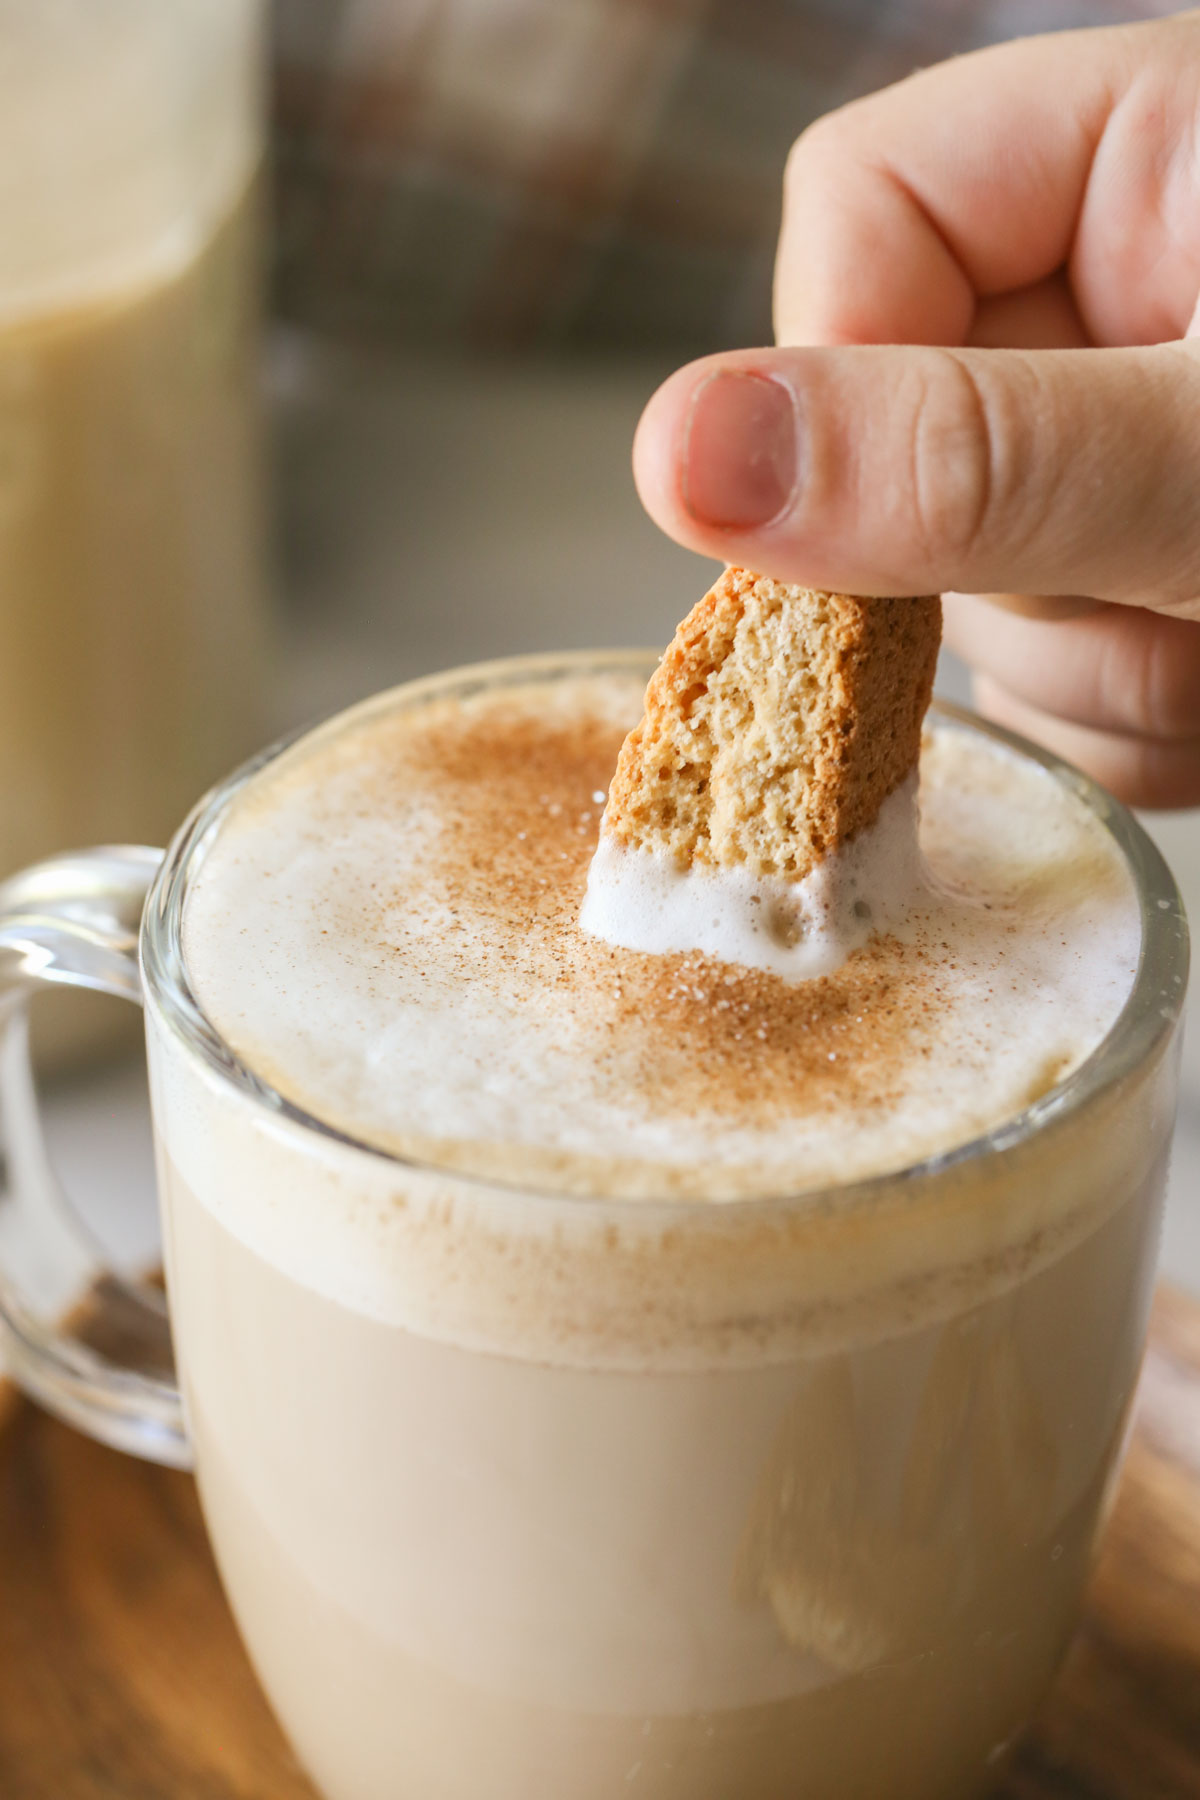 Best Sugar Free Coffee Creamer: We Taste Tested the Best Zero Sugar Coffee  Creamer